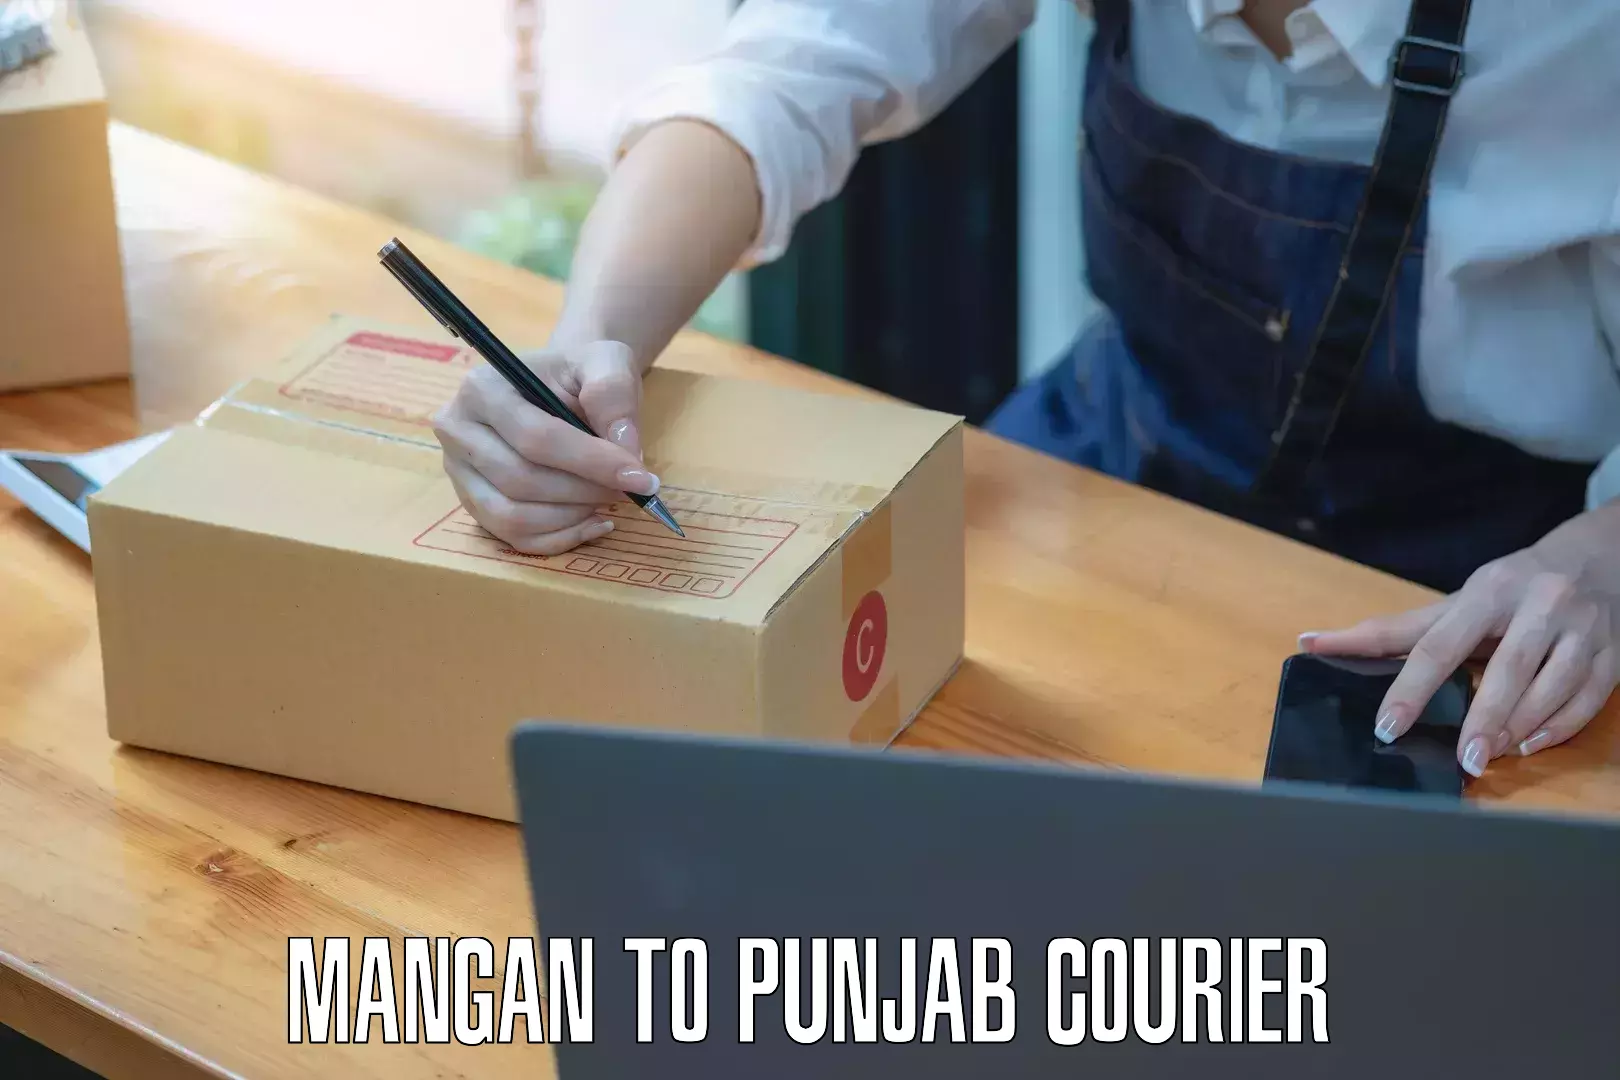 Express mail solutions Mangan to Punjab